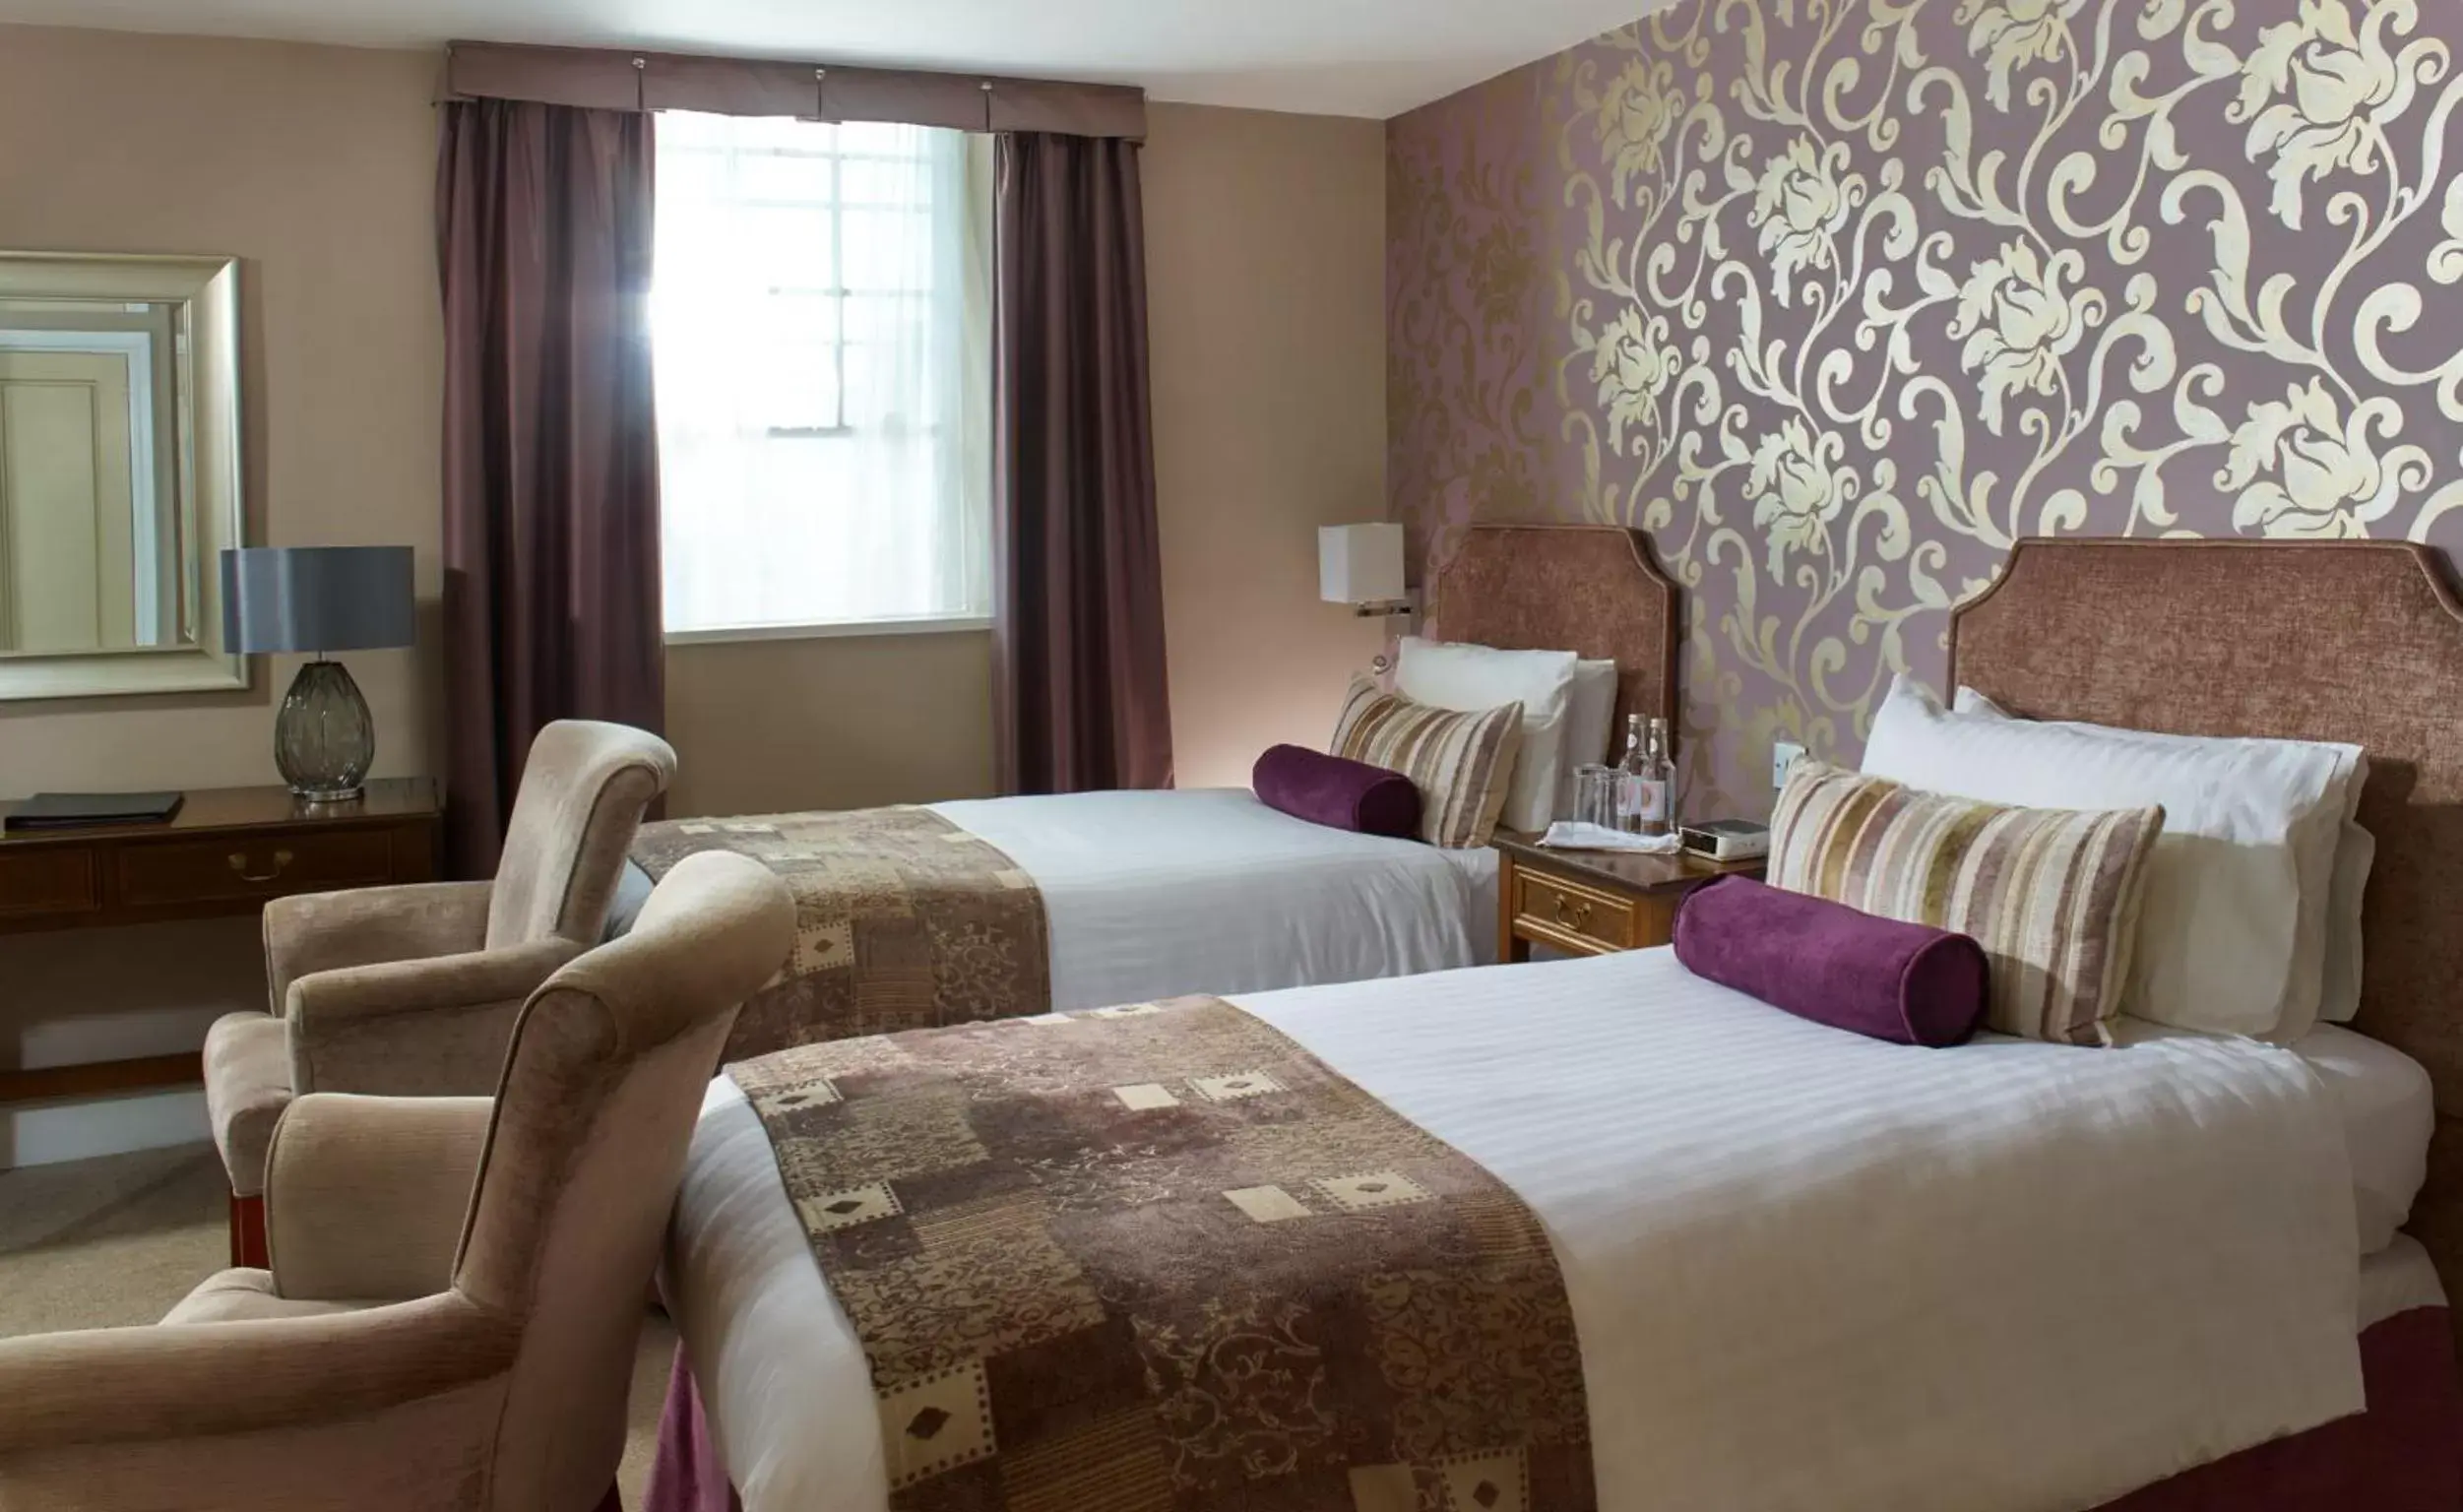 Bedroom, Room Photo in The Swan Hotel, Wells, Somerset